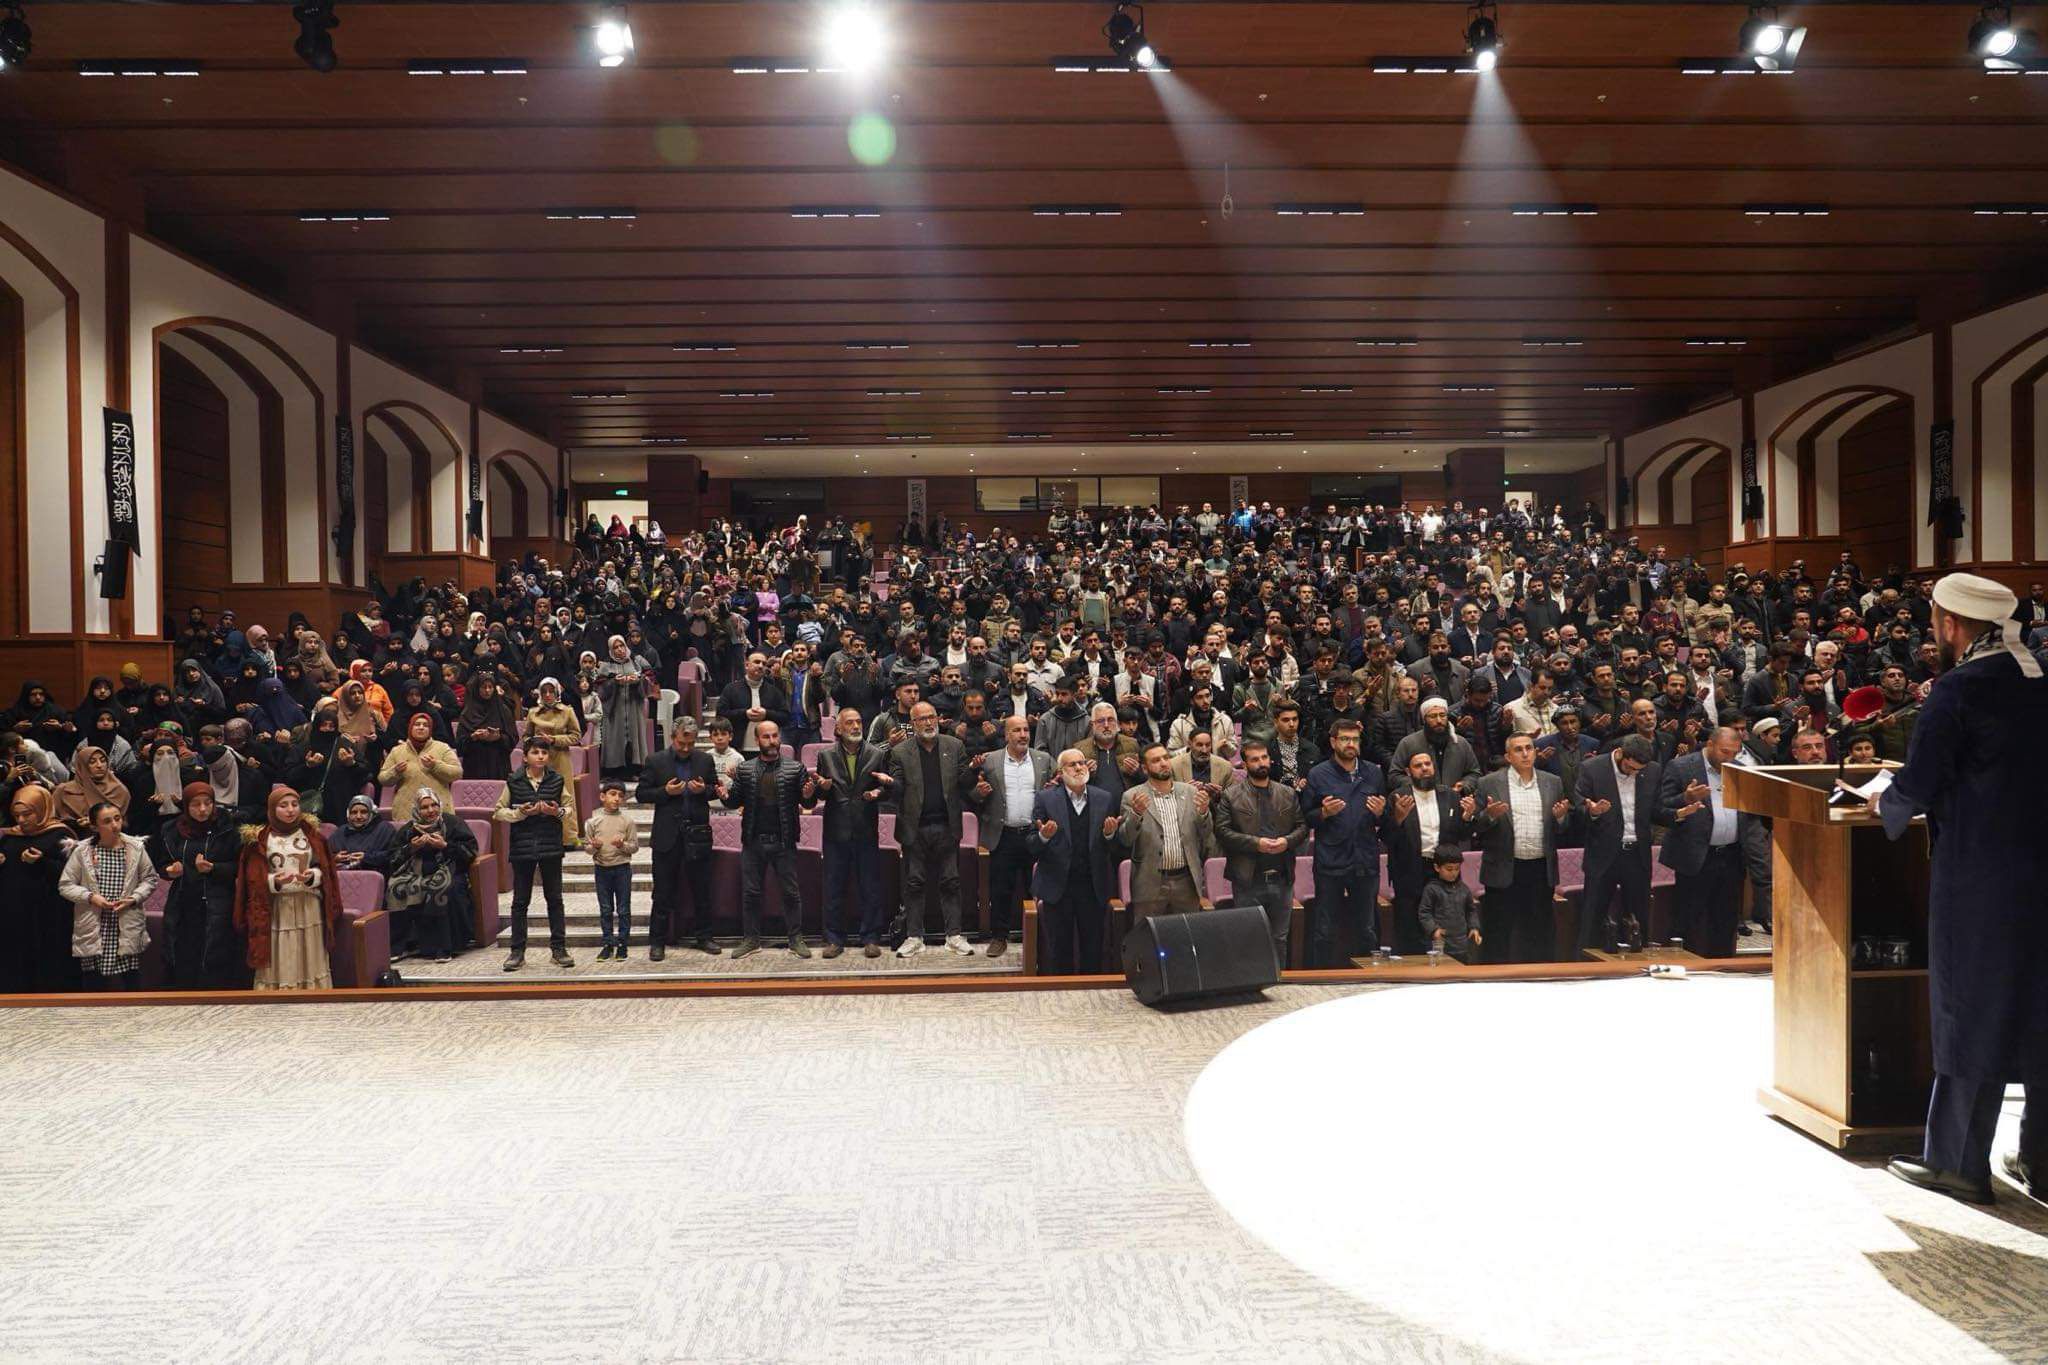 Köklü Değişim, Diyarbakır’da Düzenlediği Konferansta “Hilafet”i Konuştu, Genel-4.jpeg